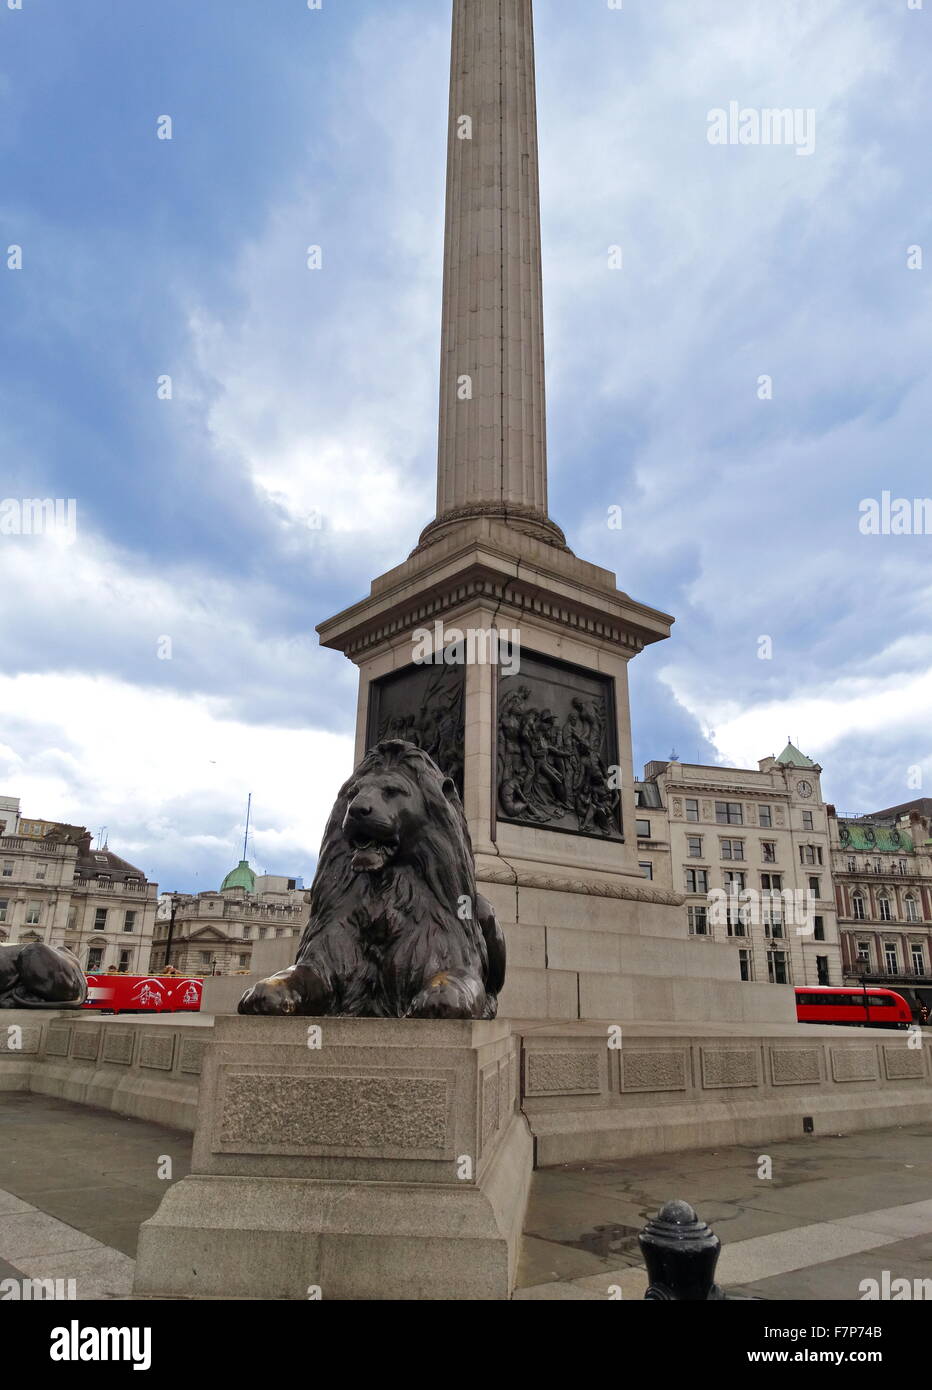 Nelson Säule Denkmal auf dem Trafalgar Square im Zentrum von London errichtet, um Admiral Horatio Nelson, zu gedenken, die in der Schlacht von Trafalgar 1805 starb. Das Denkmal wurde zwischen 1840 und 1843 nach einem Entwurf von William Railton gebaut. Stockfoto